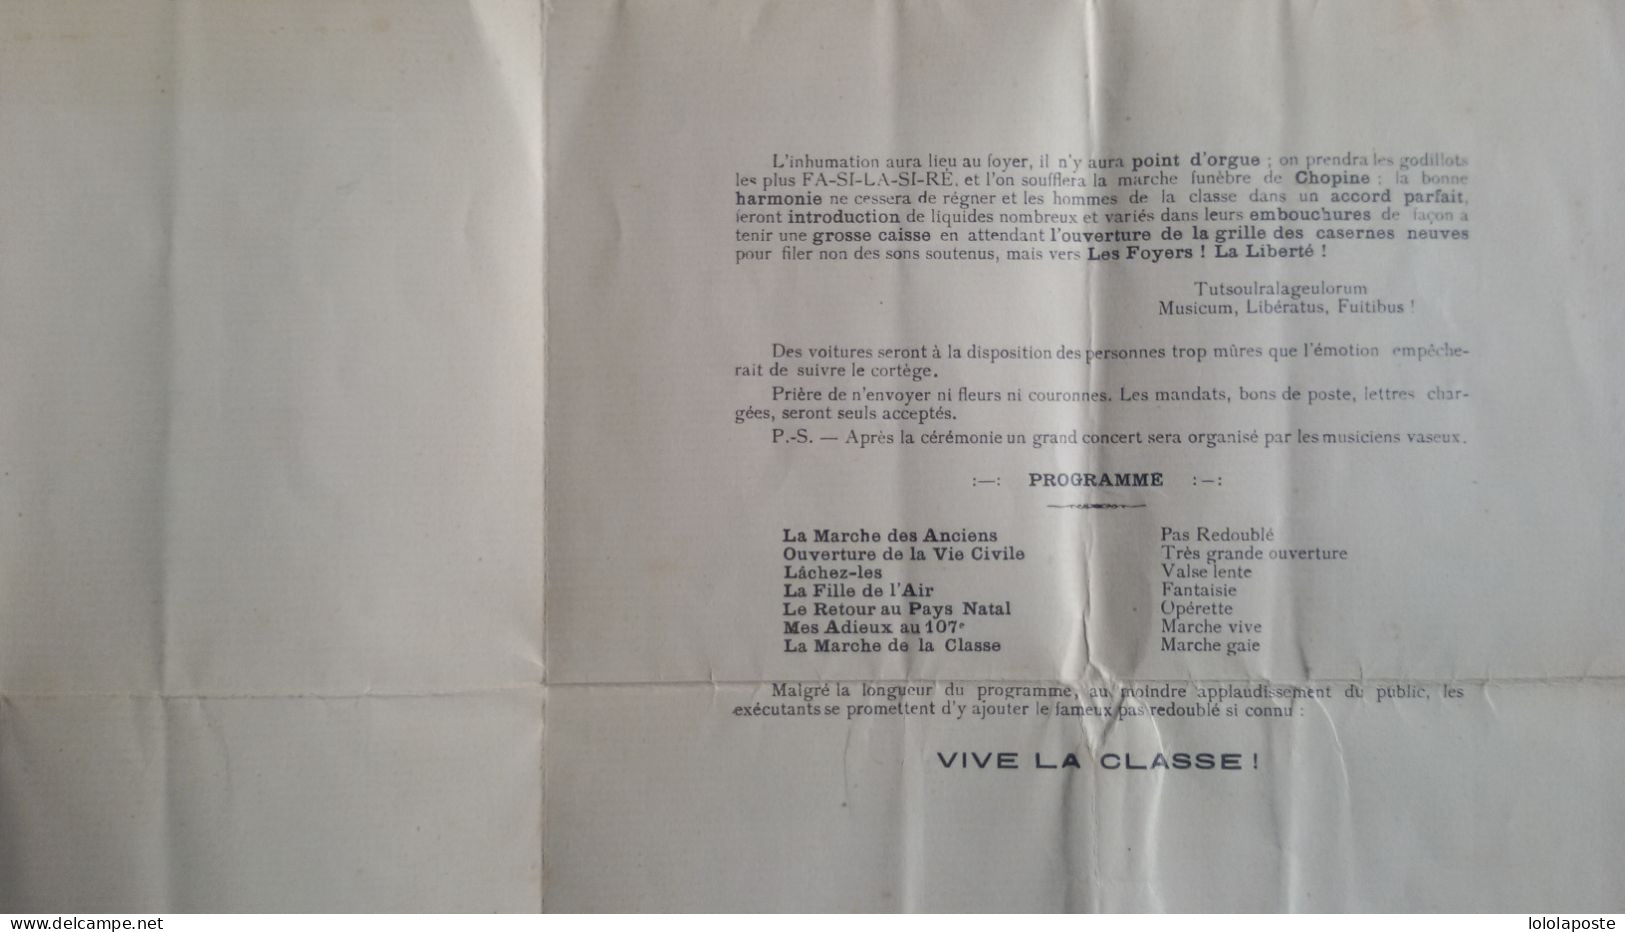 PERE CENT Du 107ème Régiment D'infanterie D'Angoulème En 1928 - 2 Photos - Prix De Départ 1€ - Documenten